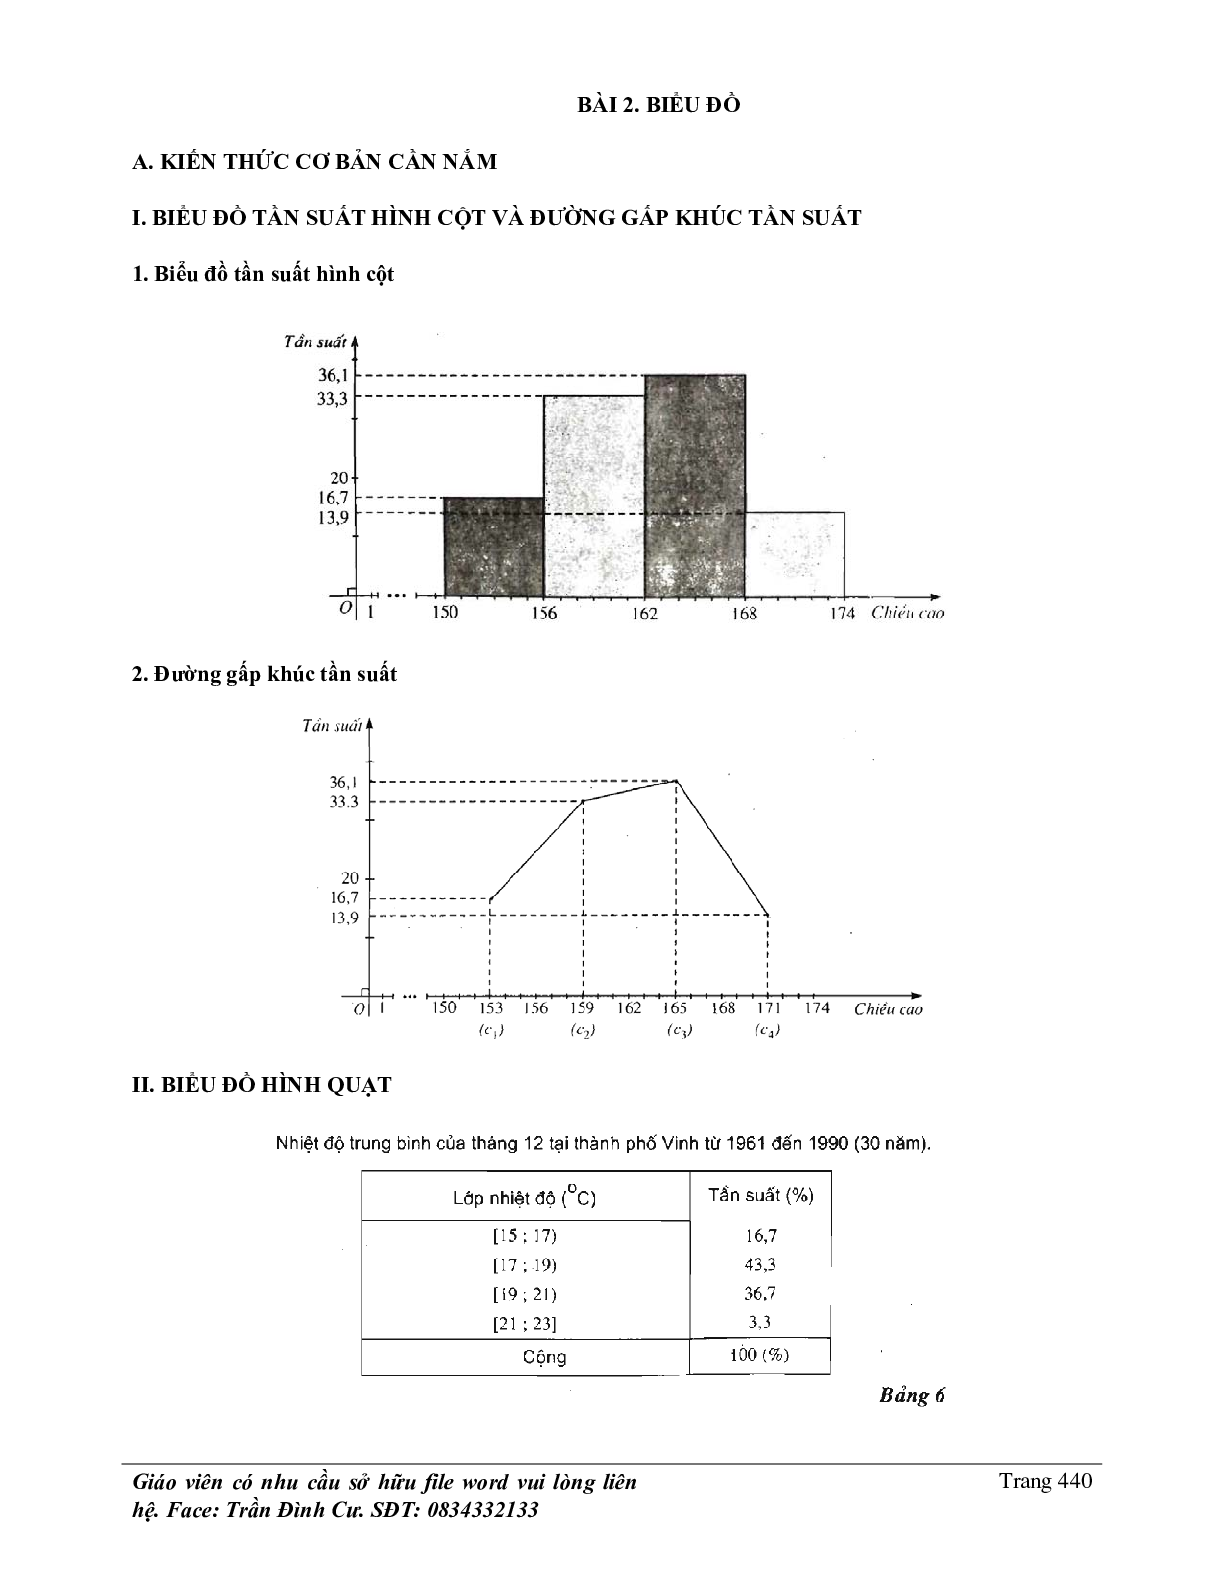 Phân loại và phương pháp giải bài tập về thống kê (trang 6)